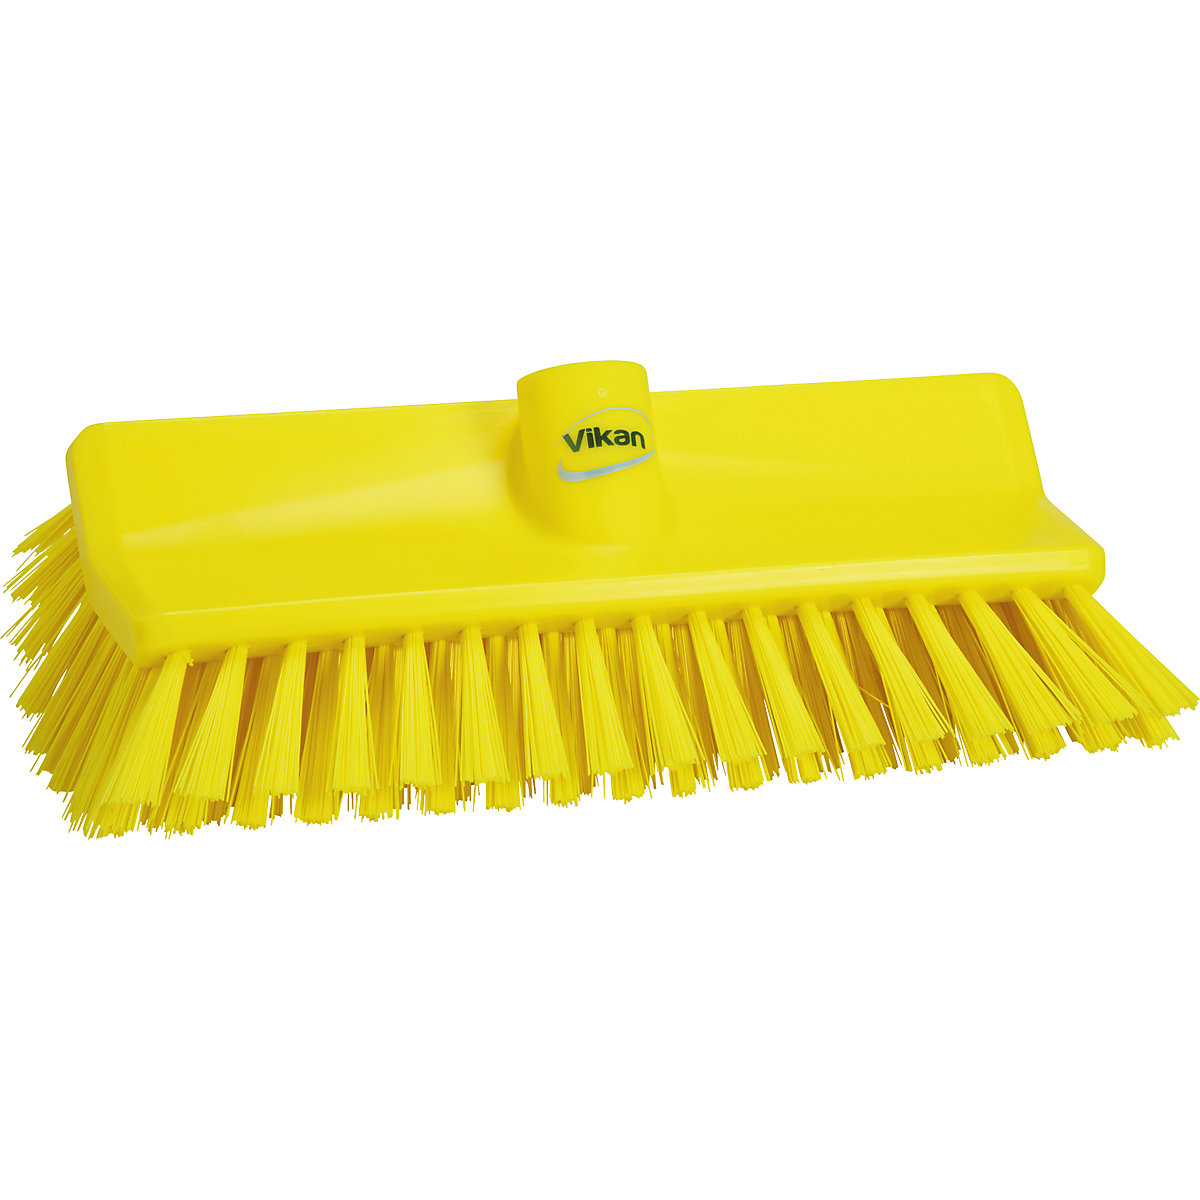 Vikan – High-low brush/corner scrubbing brush, medium, pack of 10, yellow